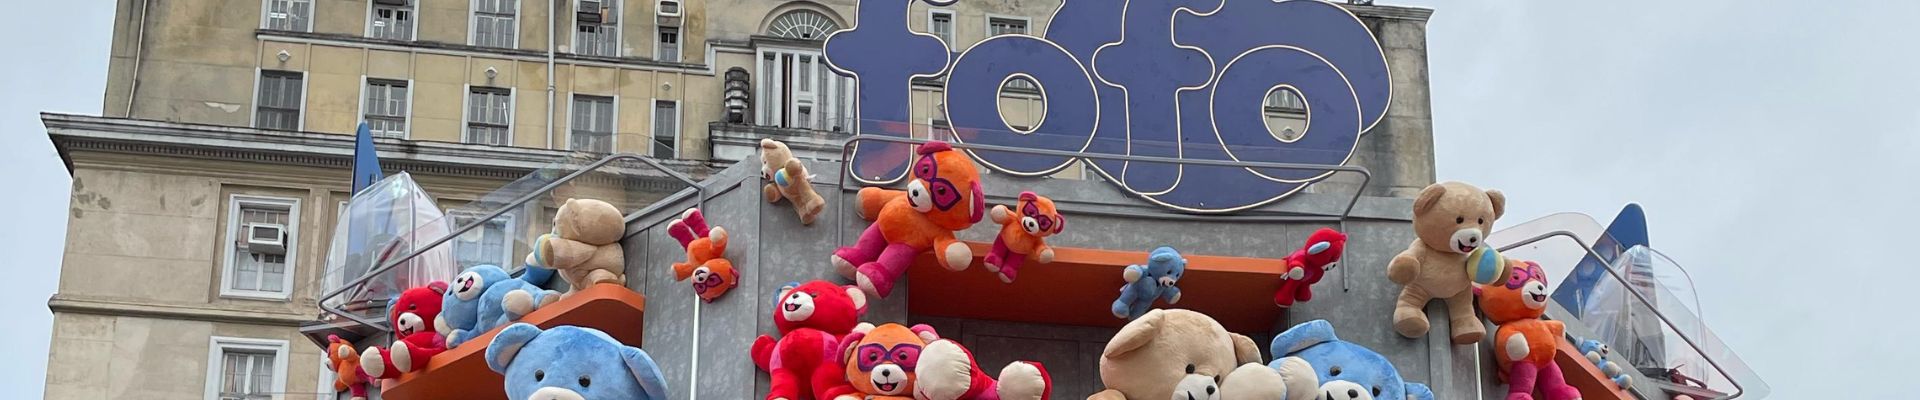 Fofo invade Praça de Porto Alegre com ursos de pelúcia